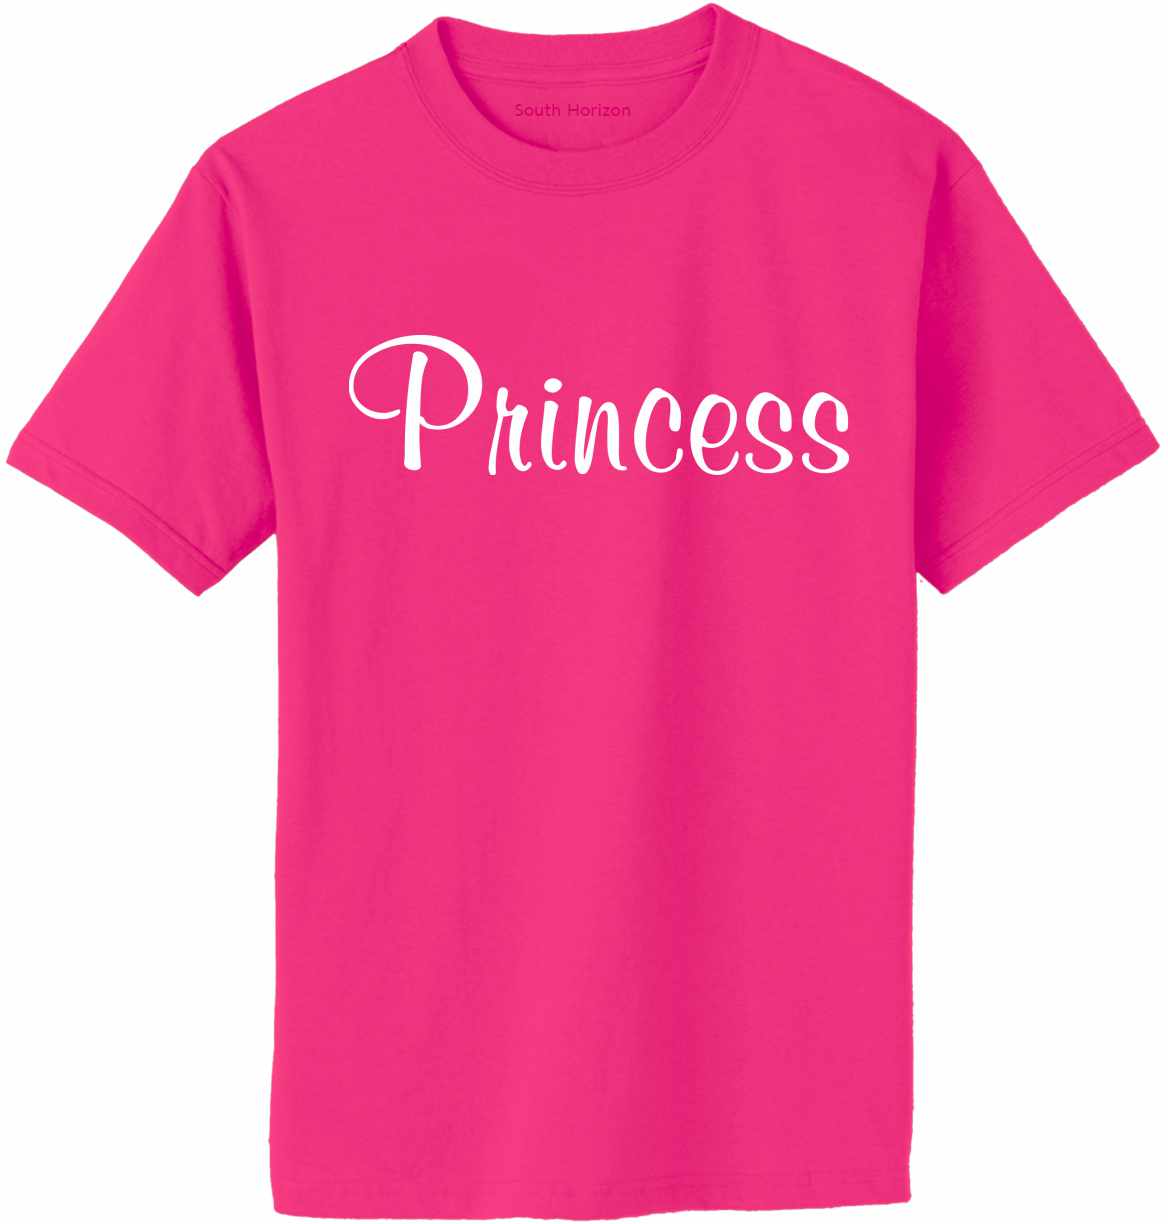 Princess Adult T-Shirt